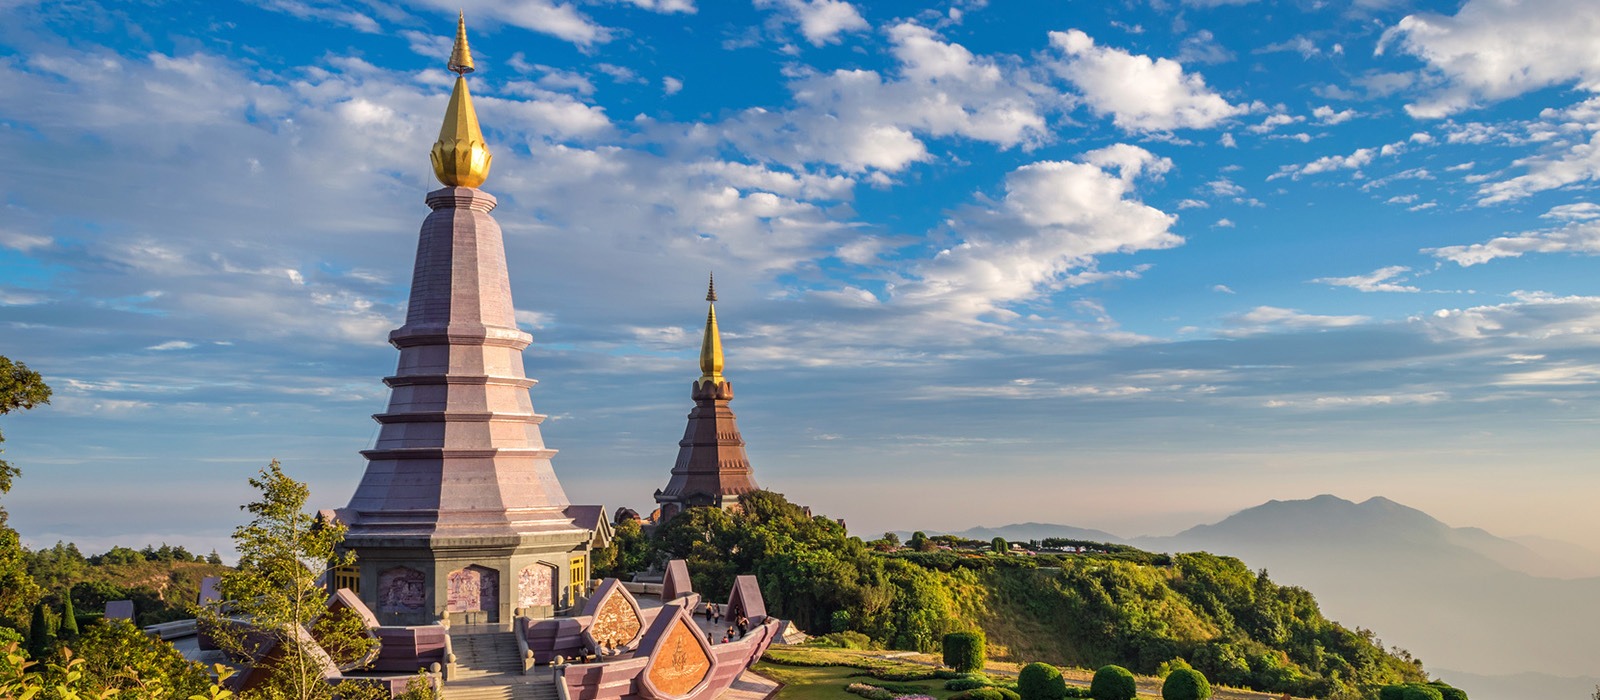 Magique Thaïlande entre temples et plages paradisiaques